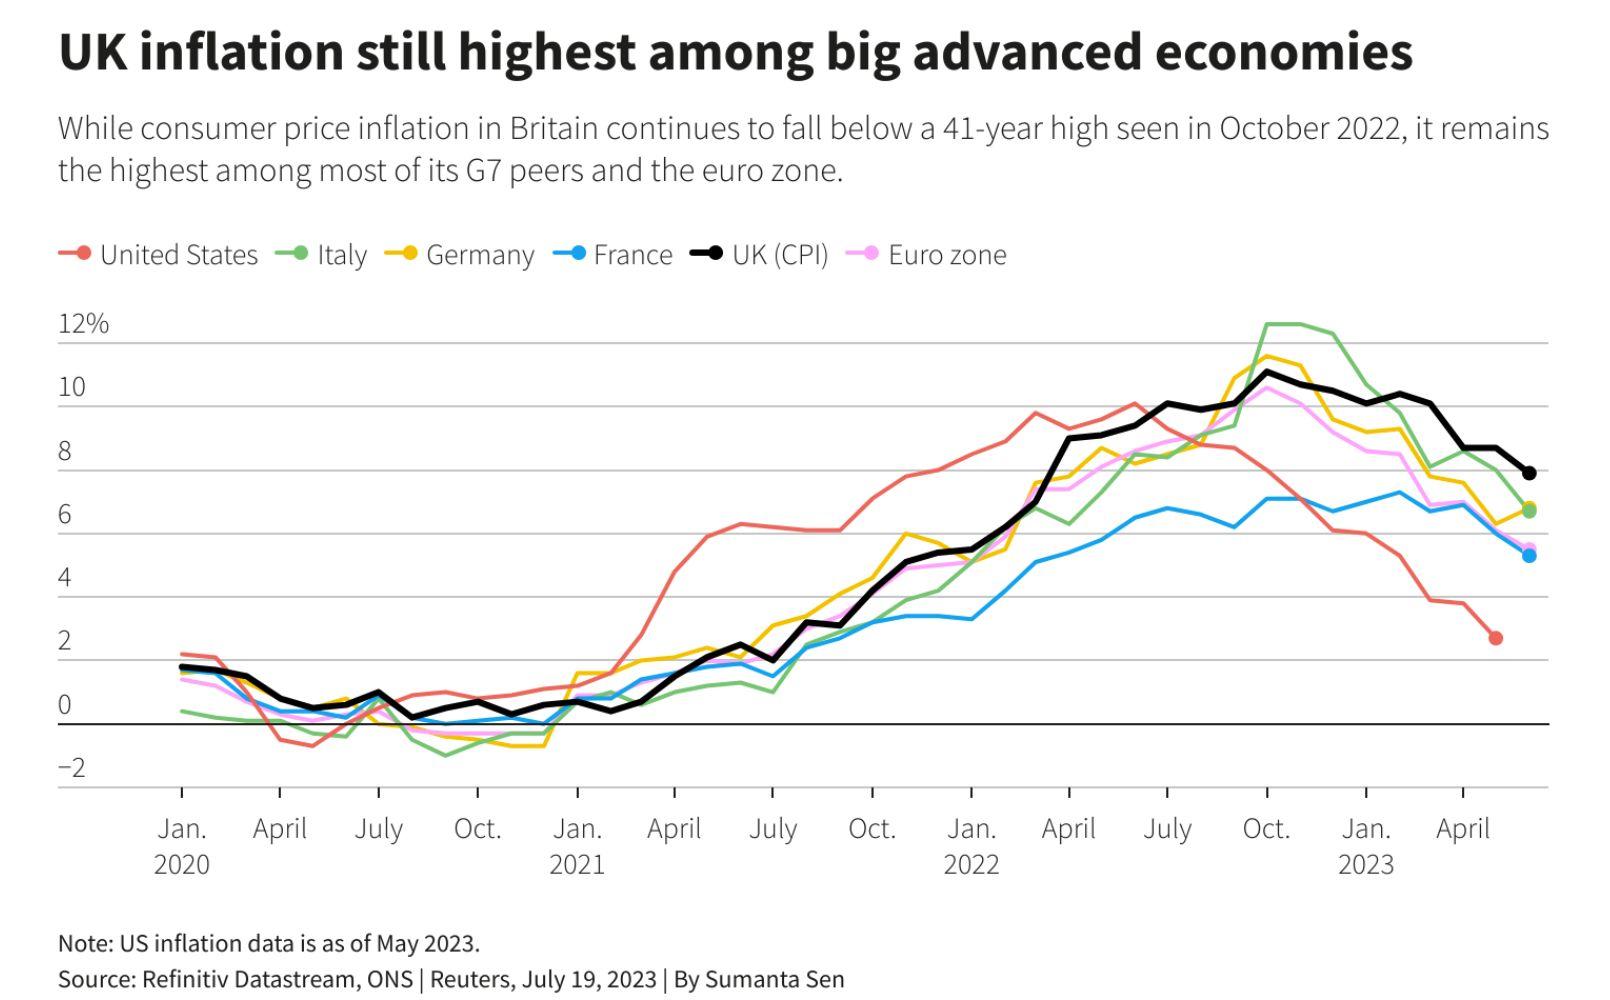 UK vs advanced economies